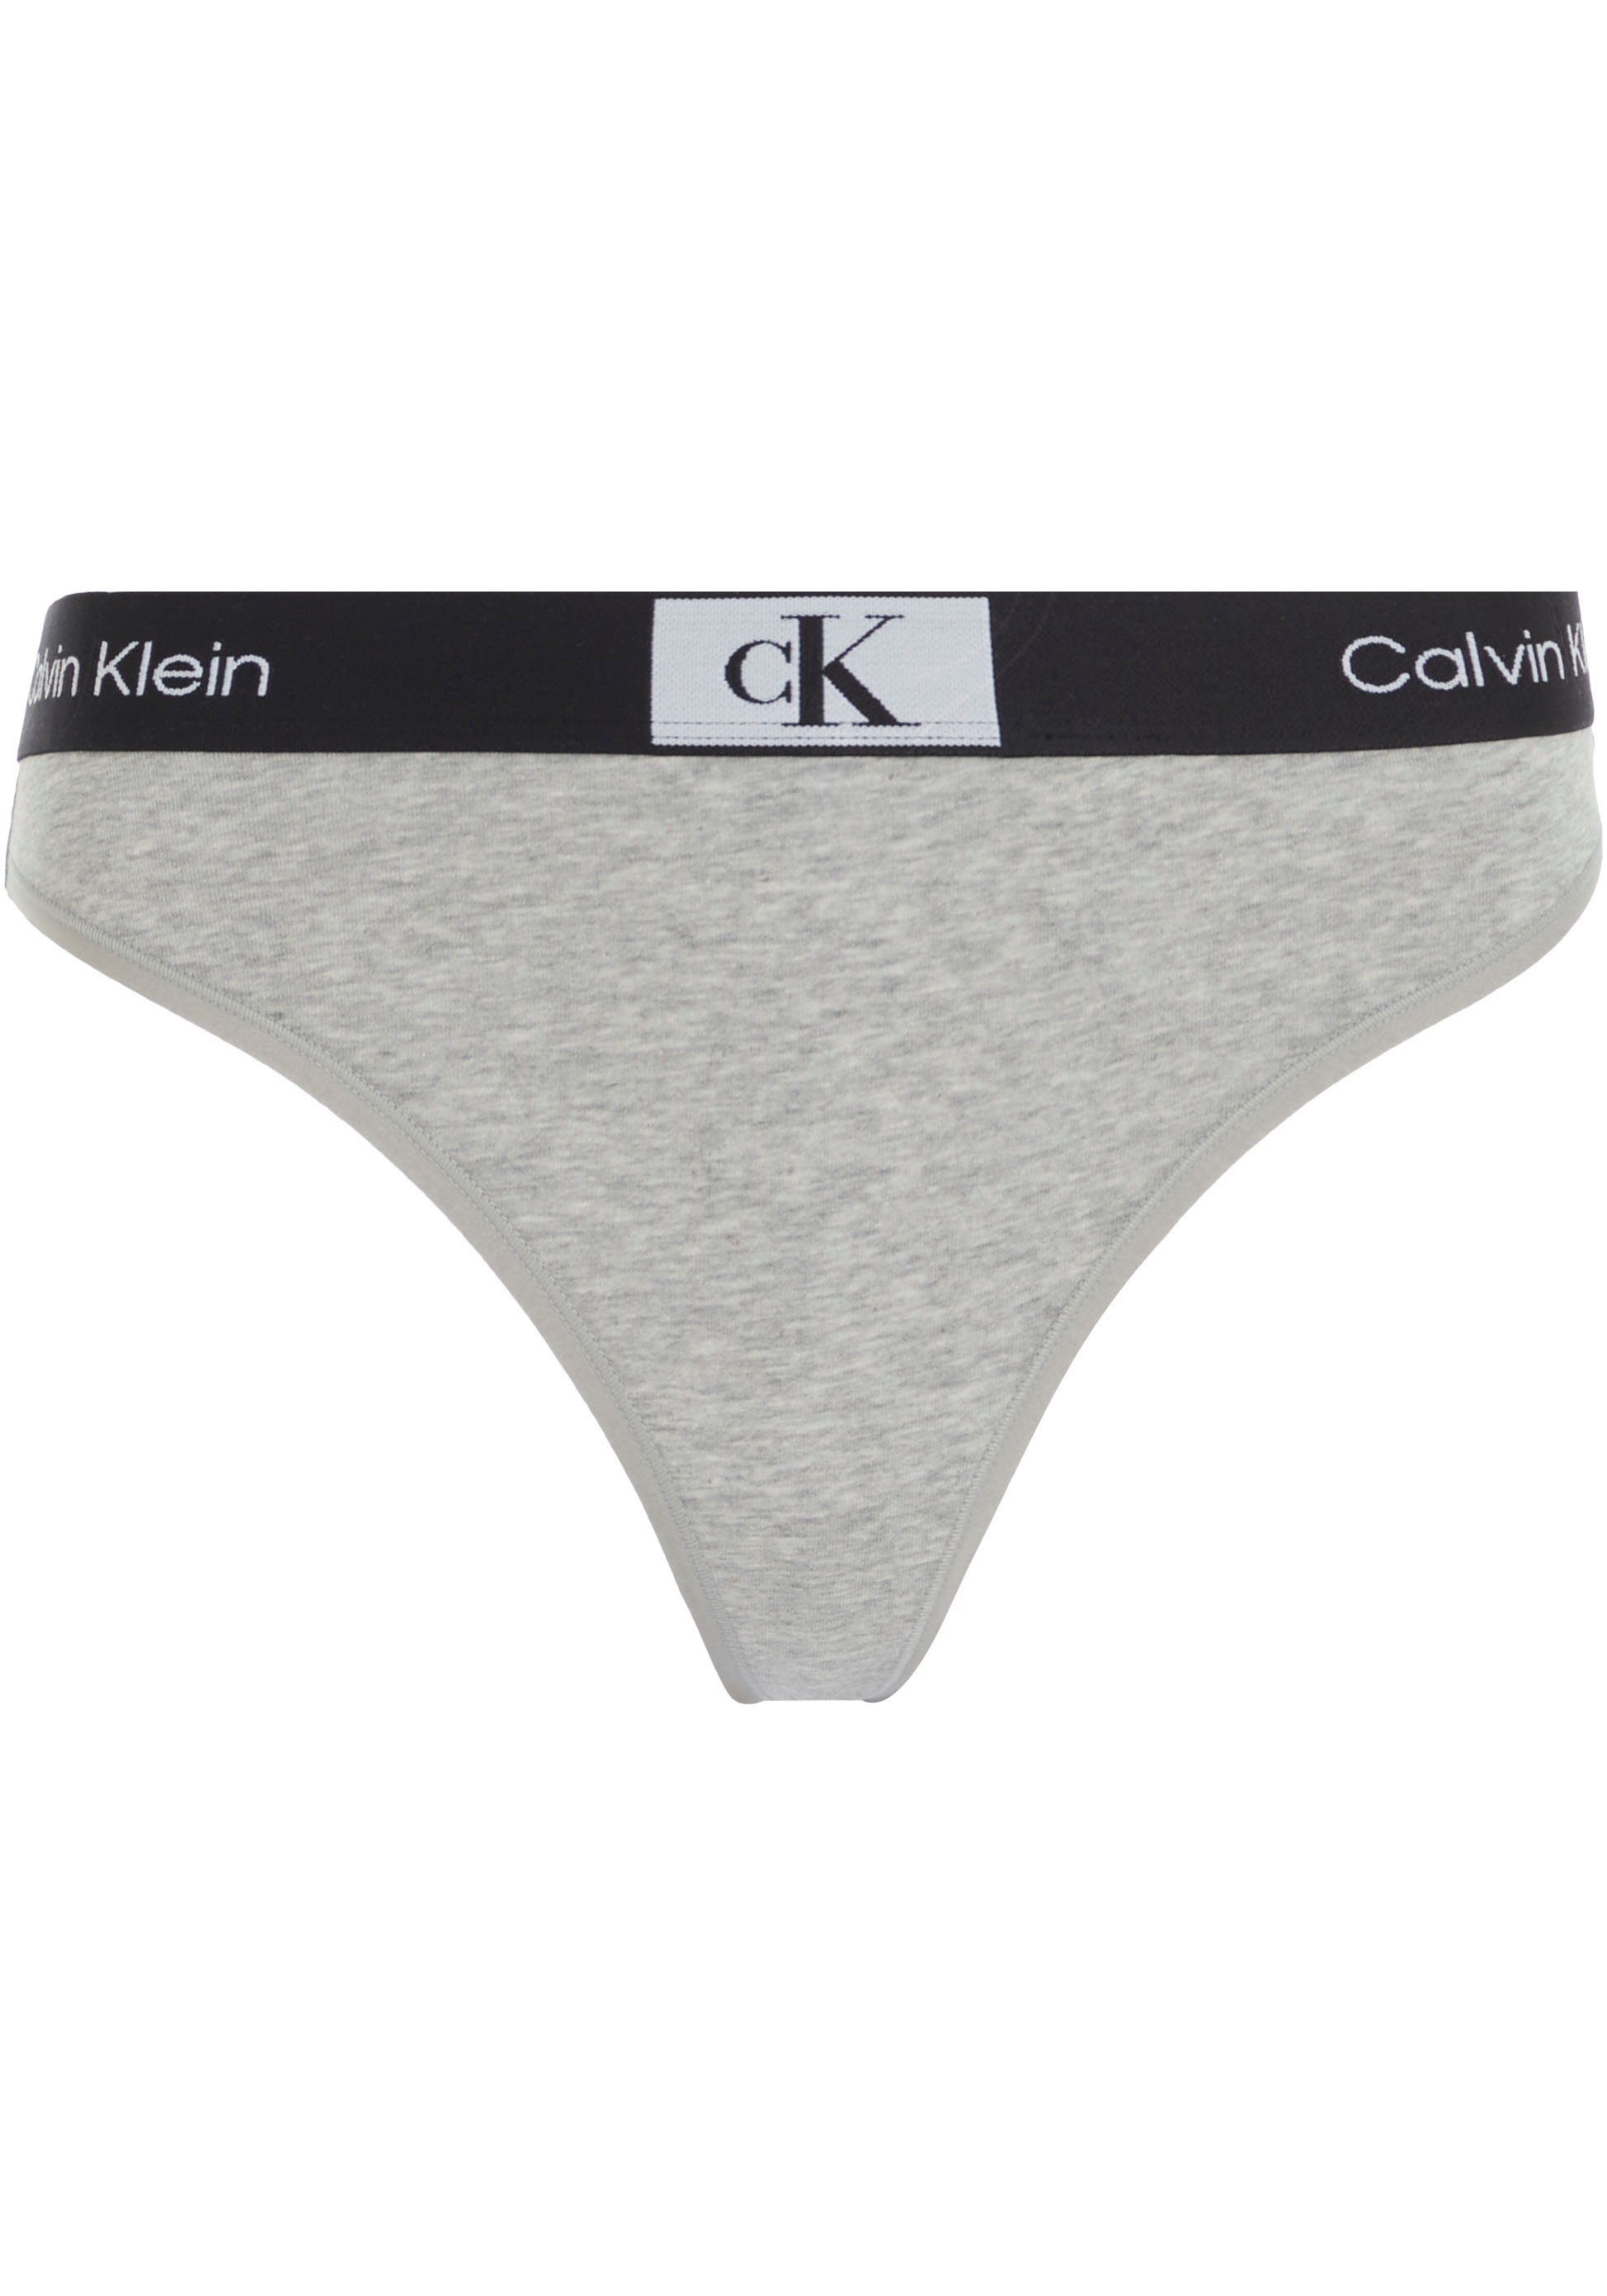 Underwear THONG Calvin MODERN Klein mit T-String GREY-HEATHER Alloverprint